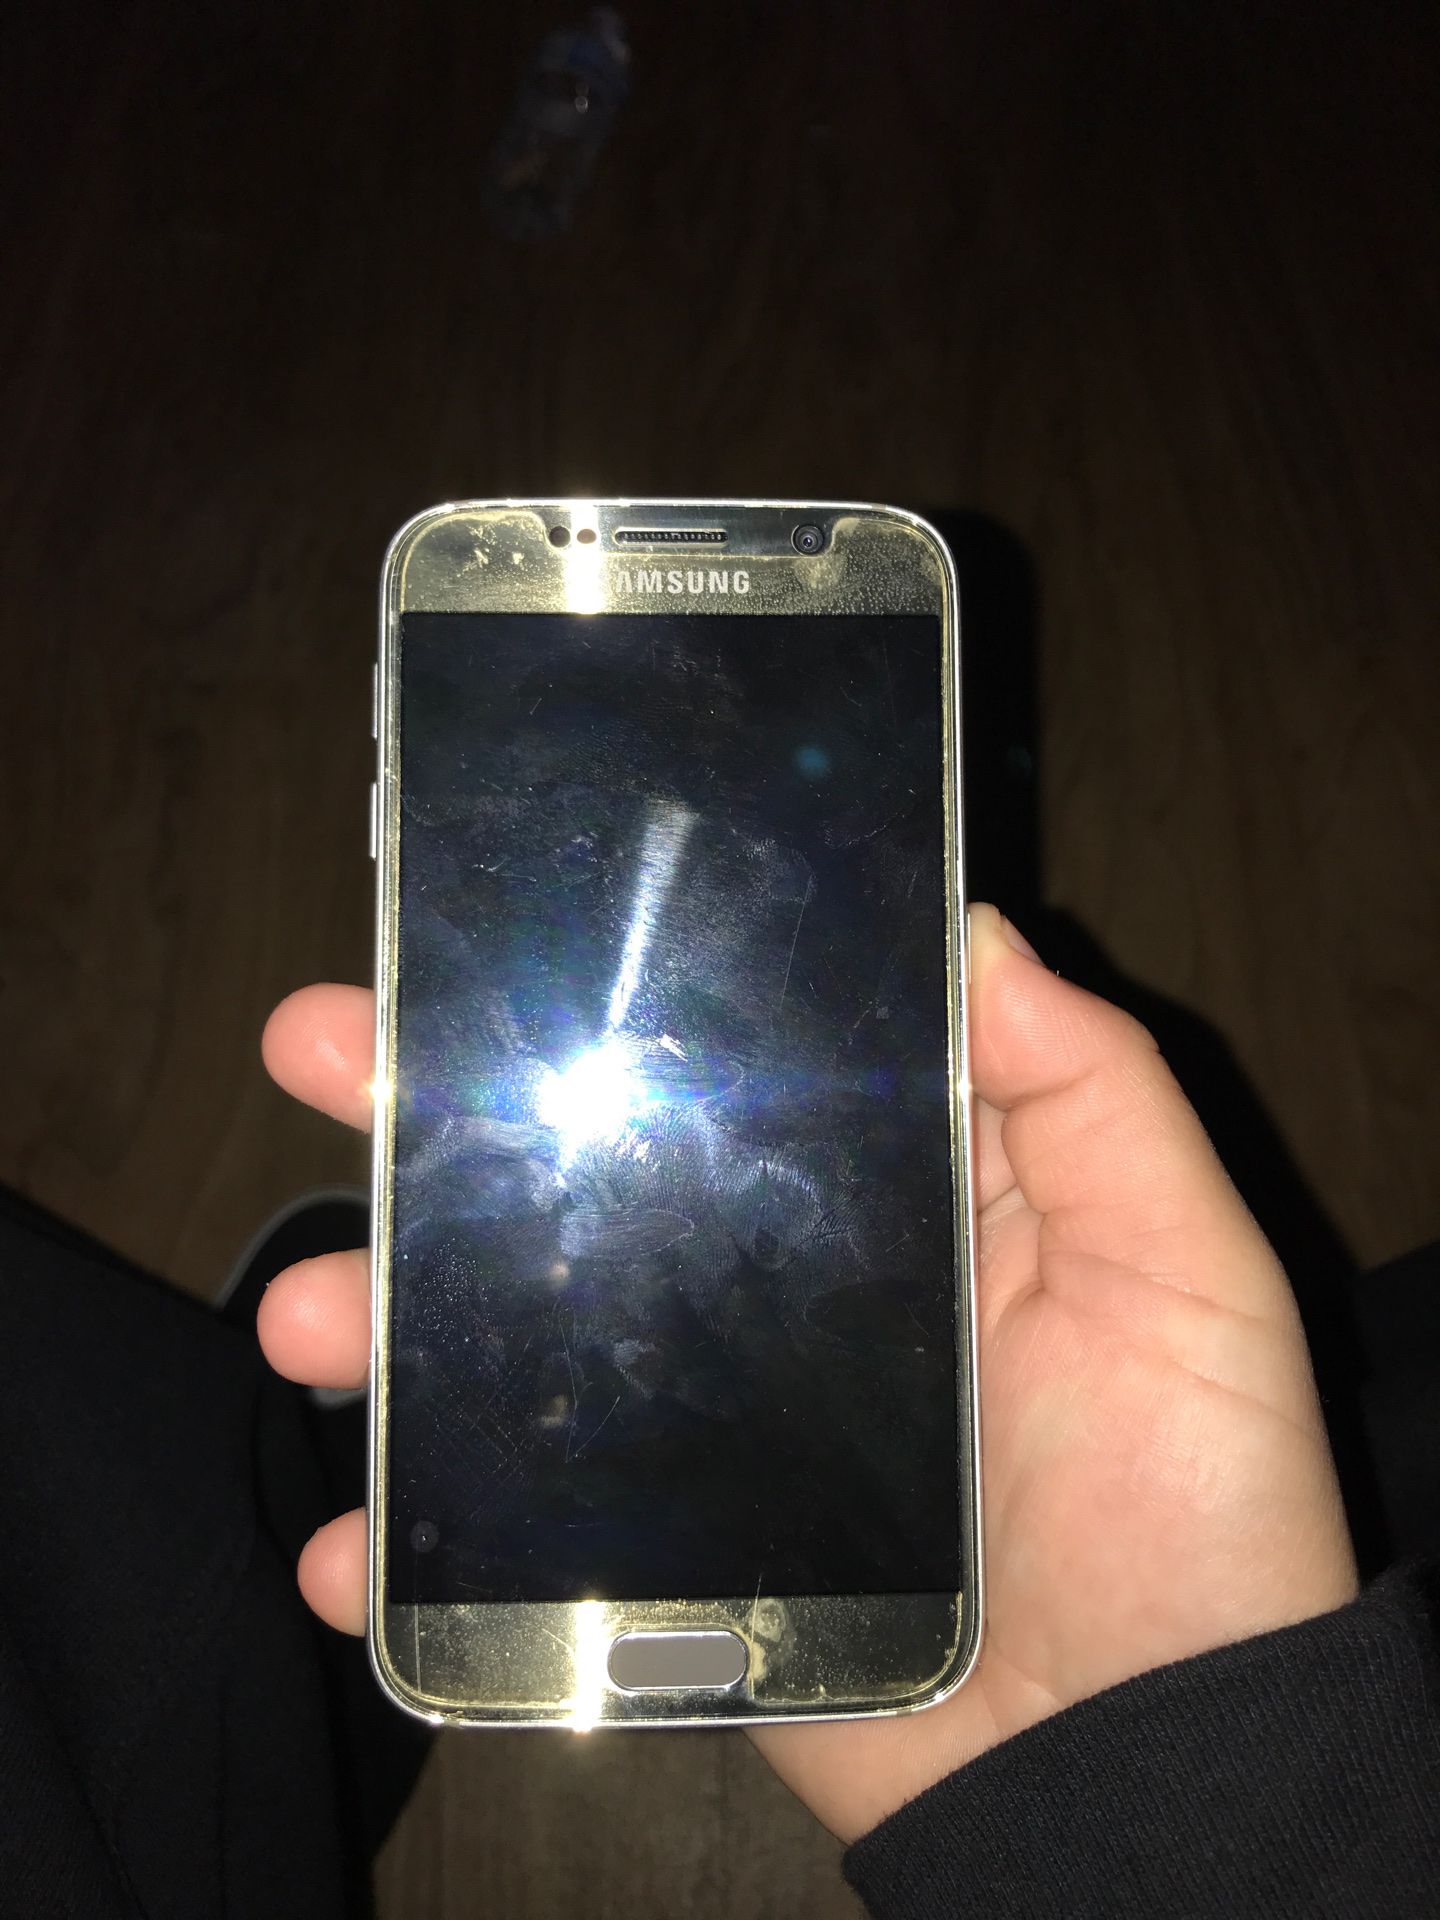 Samsung galaxy s6 unlocked